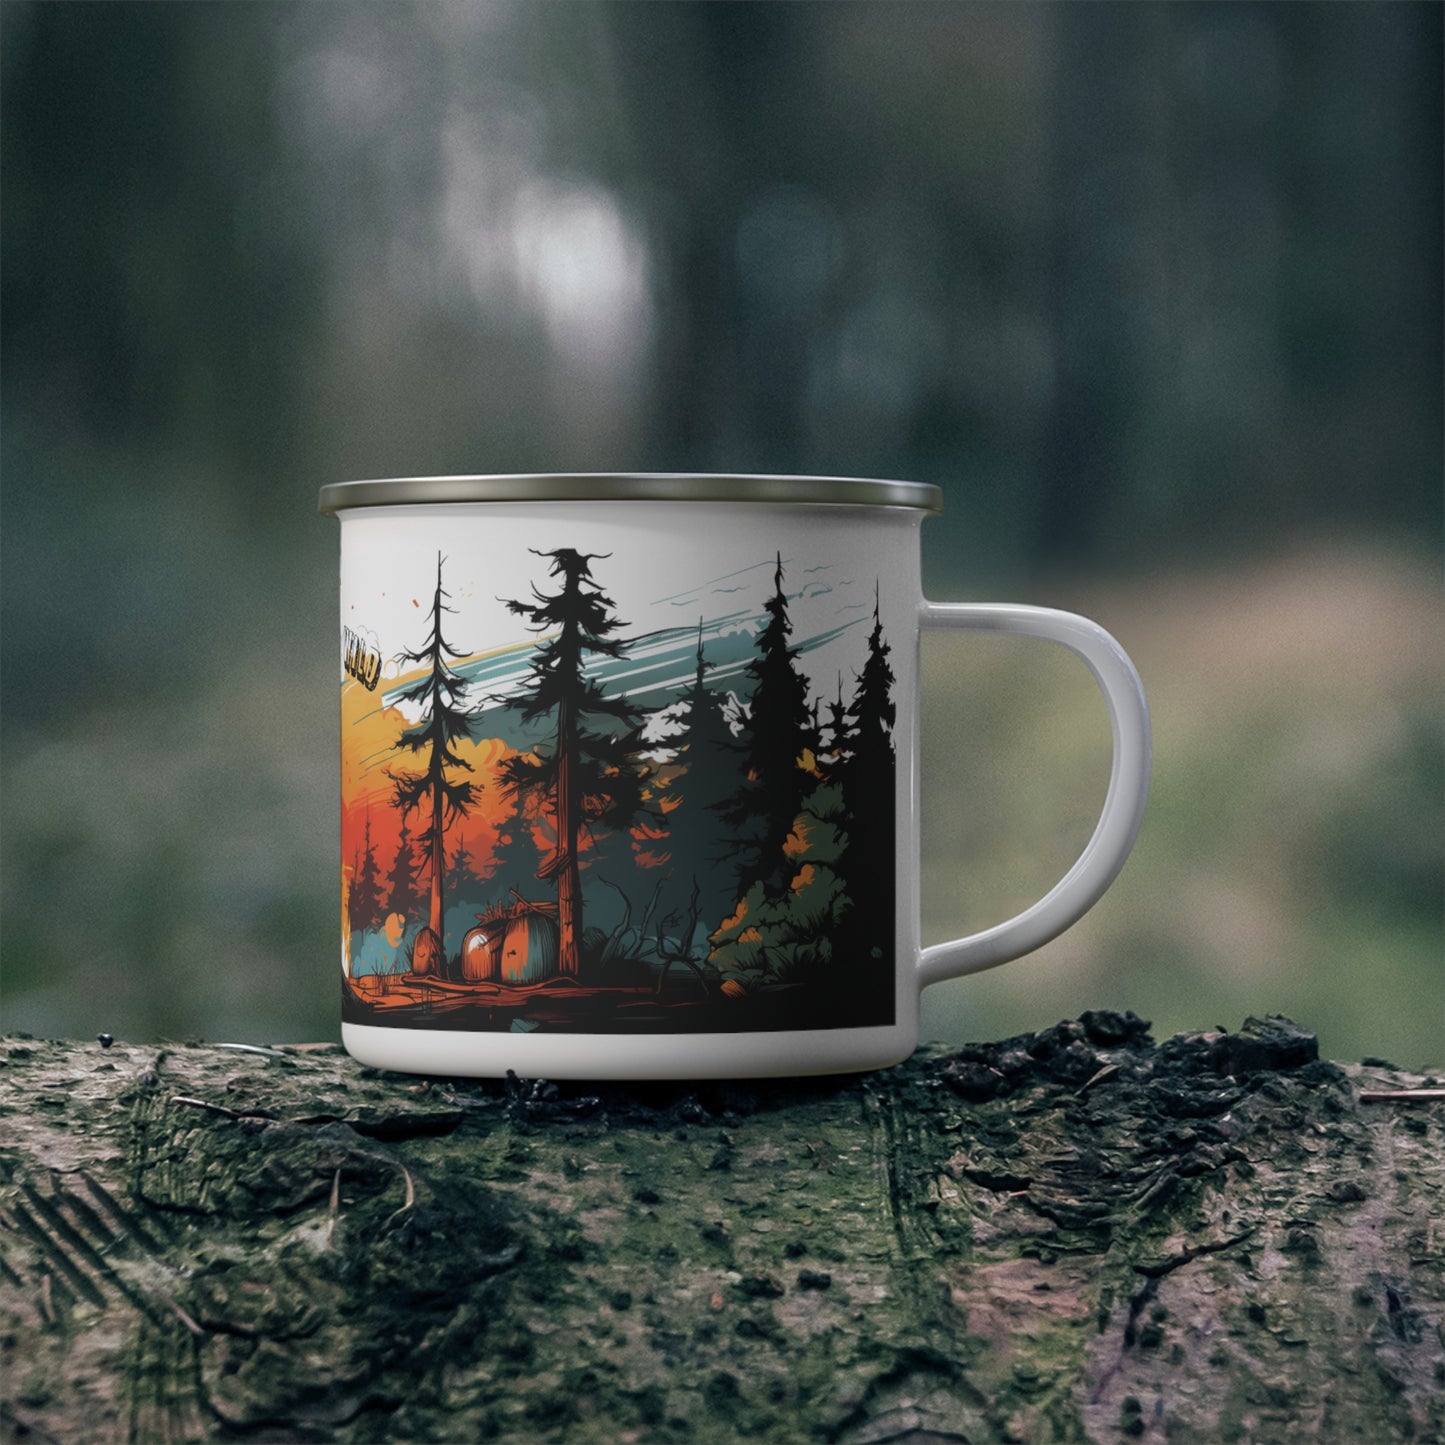 Camping Mug, Campfire & Wild Mug, Campfire Mug, Camping Coffee Mug, Wild Life Mug, Camping Cup, 12 oz Camping Mug